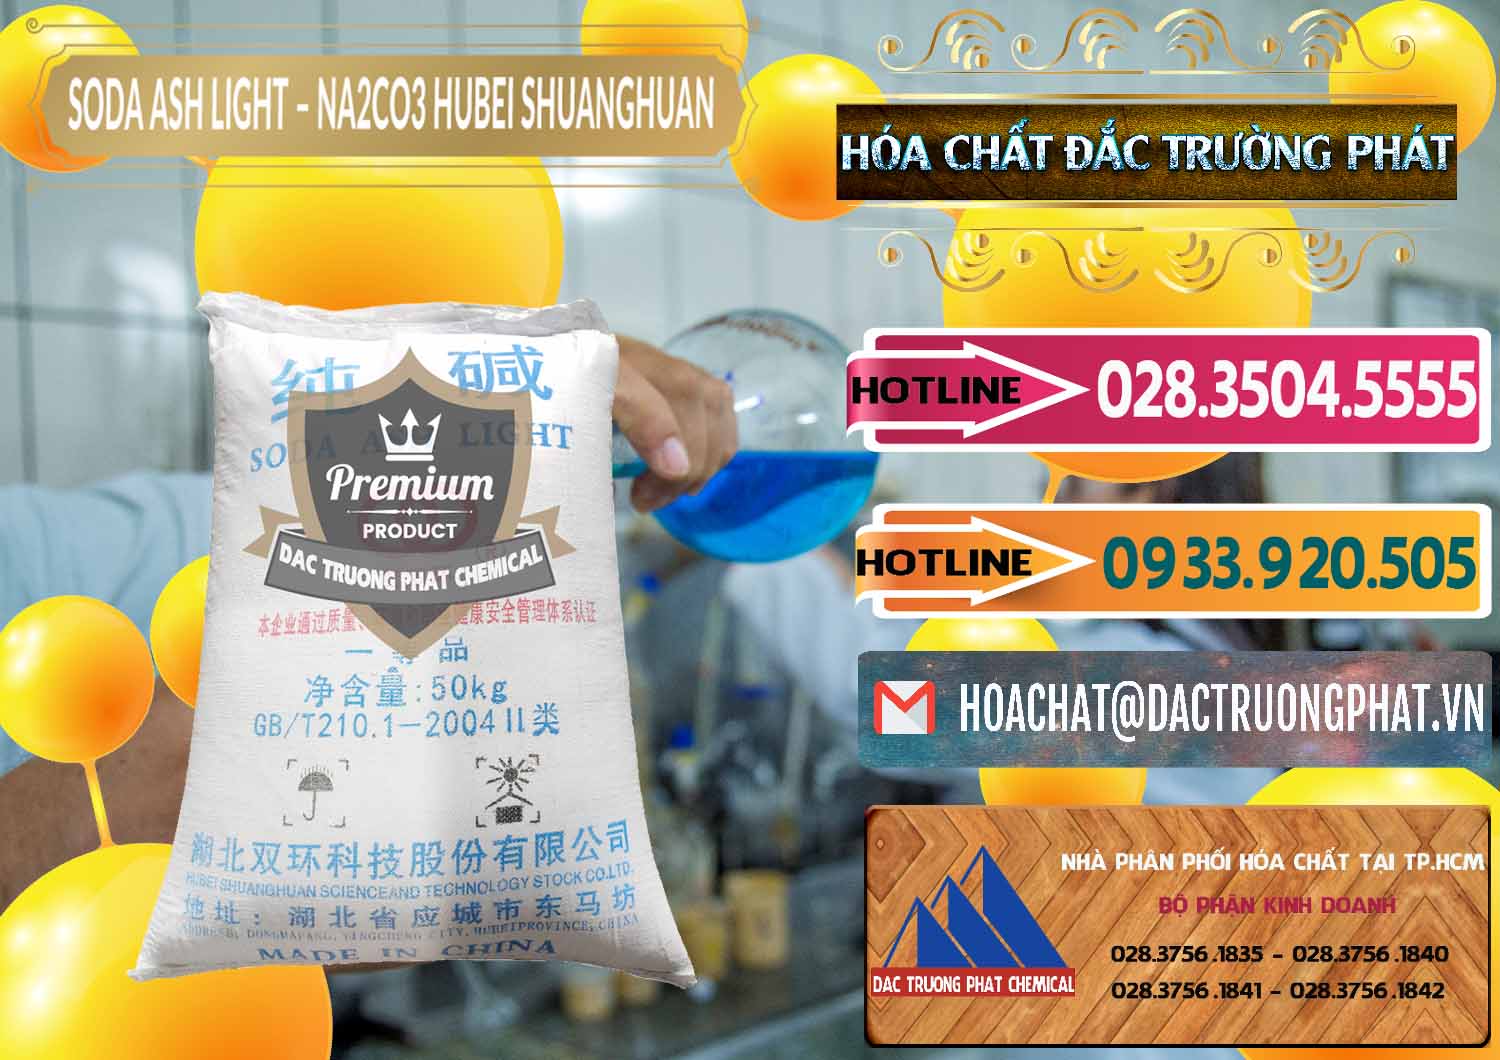 Cty bán ( cung cấp ) Soda Ash Light - NA2CO3 2 Vòng Tròn Hubei Shuanghuan Trung Quốc China - 0130 - Công ty kinh doanh & cung cấp hóa chất tại TP.HCM - dactruongphat.vn